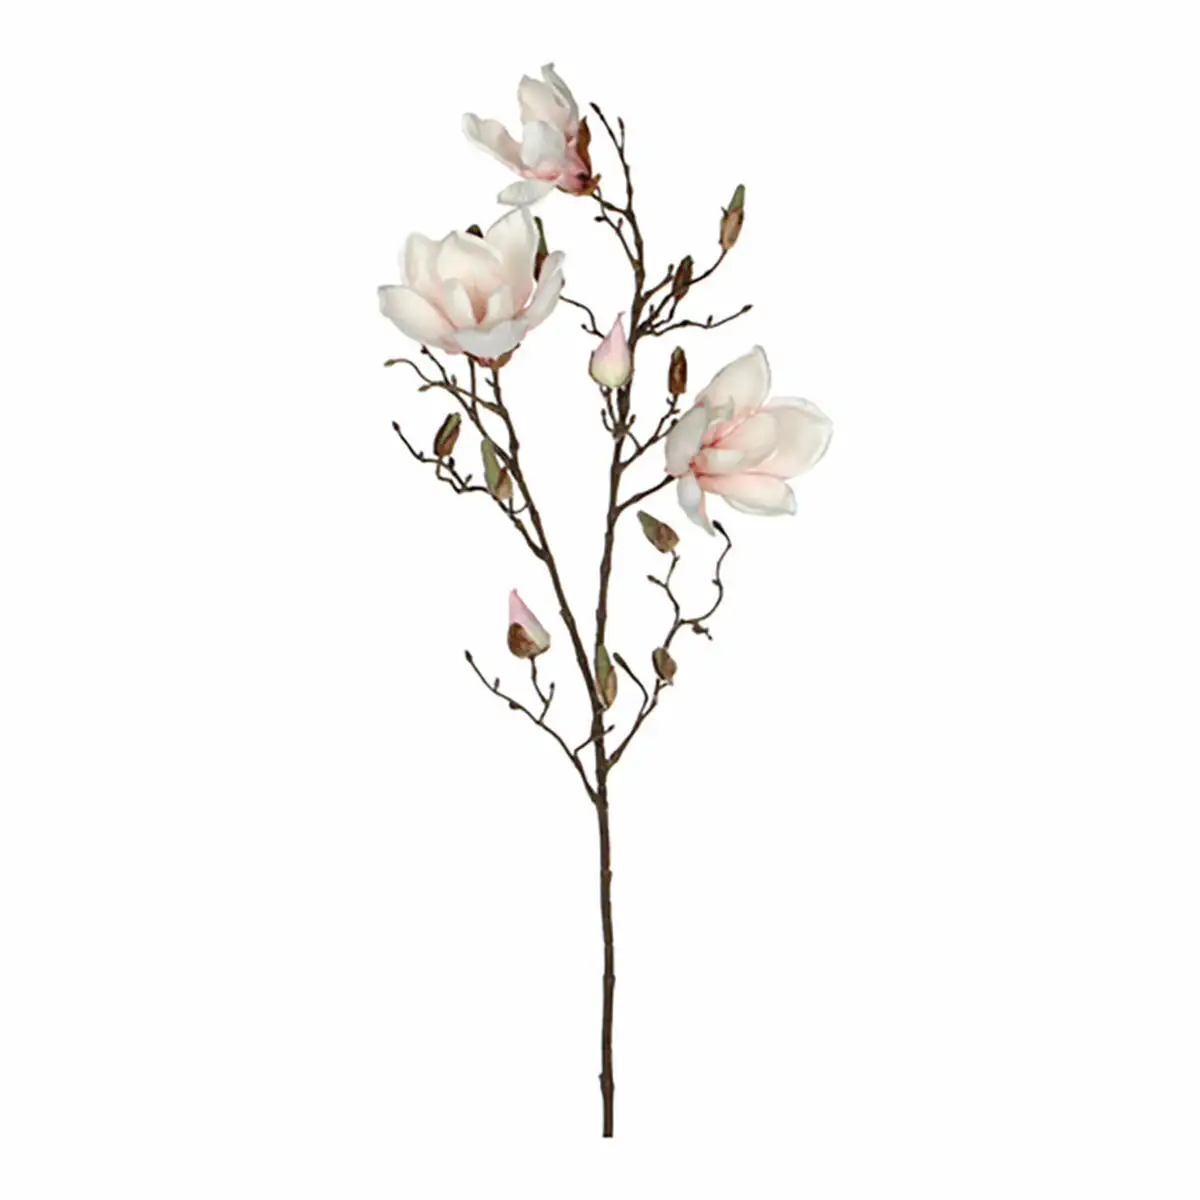 Bouquets mica de corations magnolia 88 cm_1900. DIAYTAR SENEGAL - Votre Source de Découvertes Shopping. Naviguez à travers nos catégories et découvrez des articles qui vous surprendront et vous séduiront.